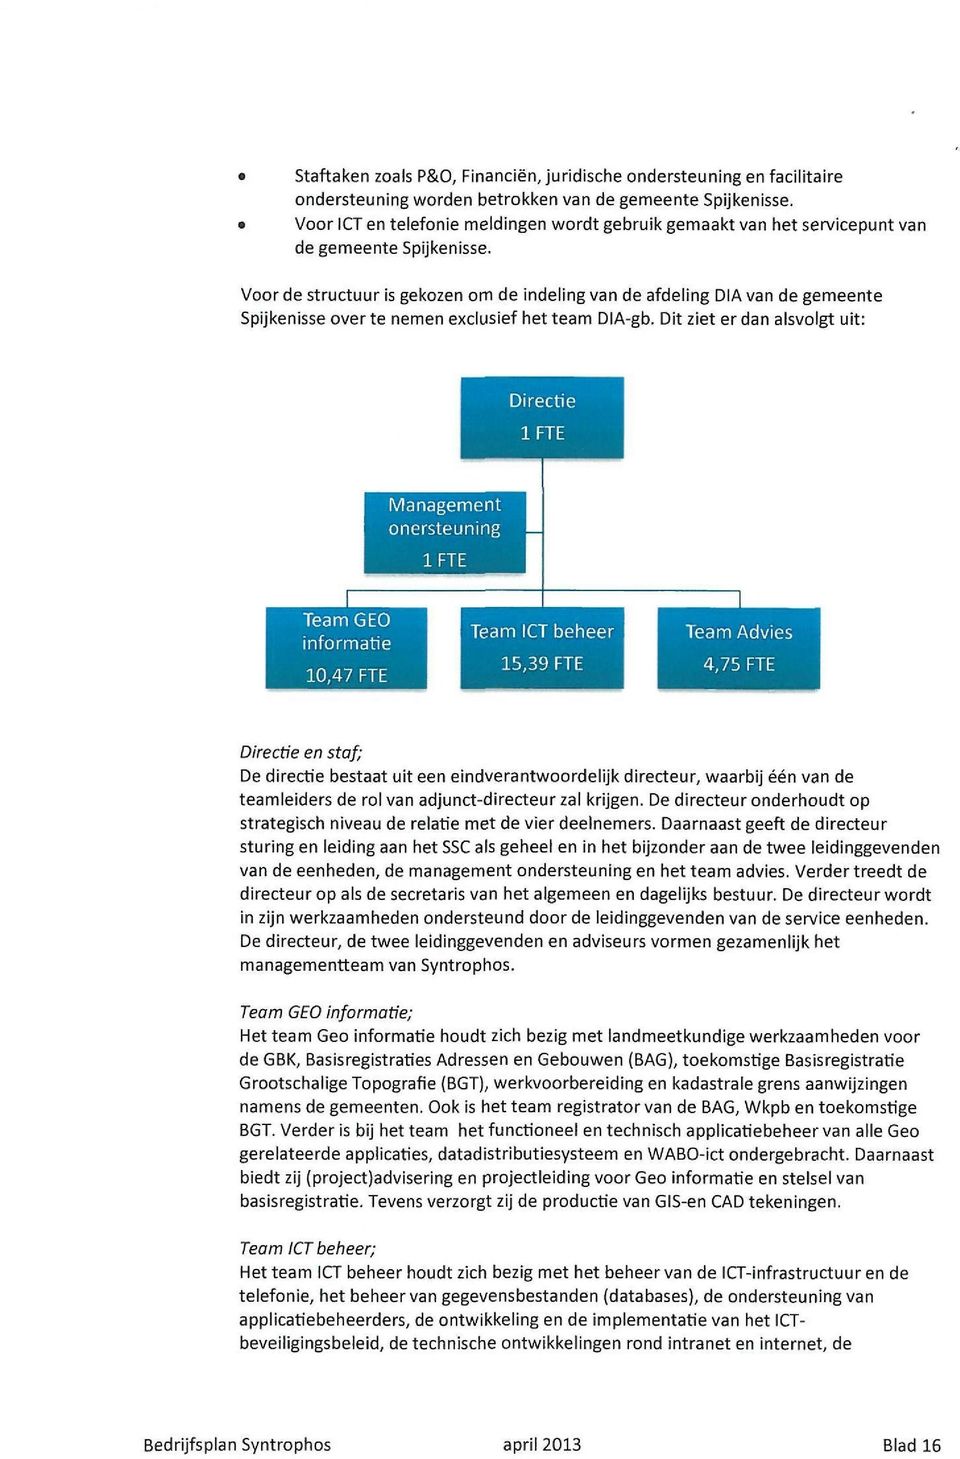 Voor de structuur is gekozen om de indeling van de afdeling DIA van de gemeente Spijkenisse over te nemen exclusief het team DIA-gb.